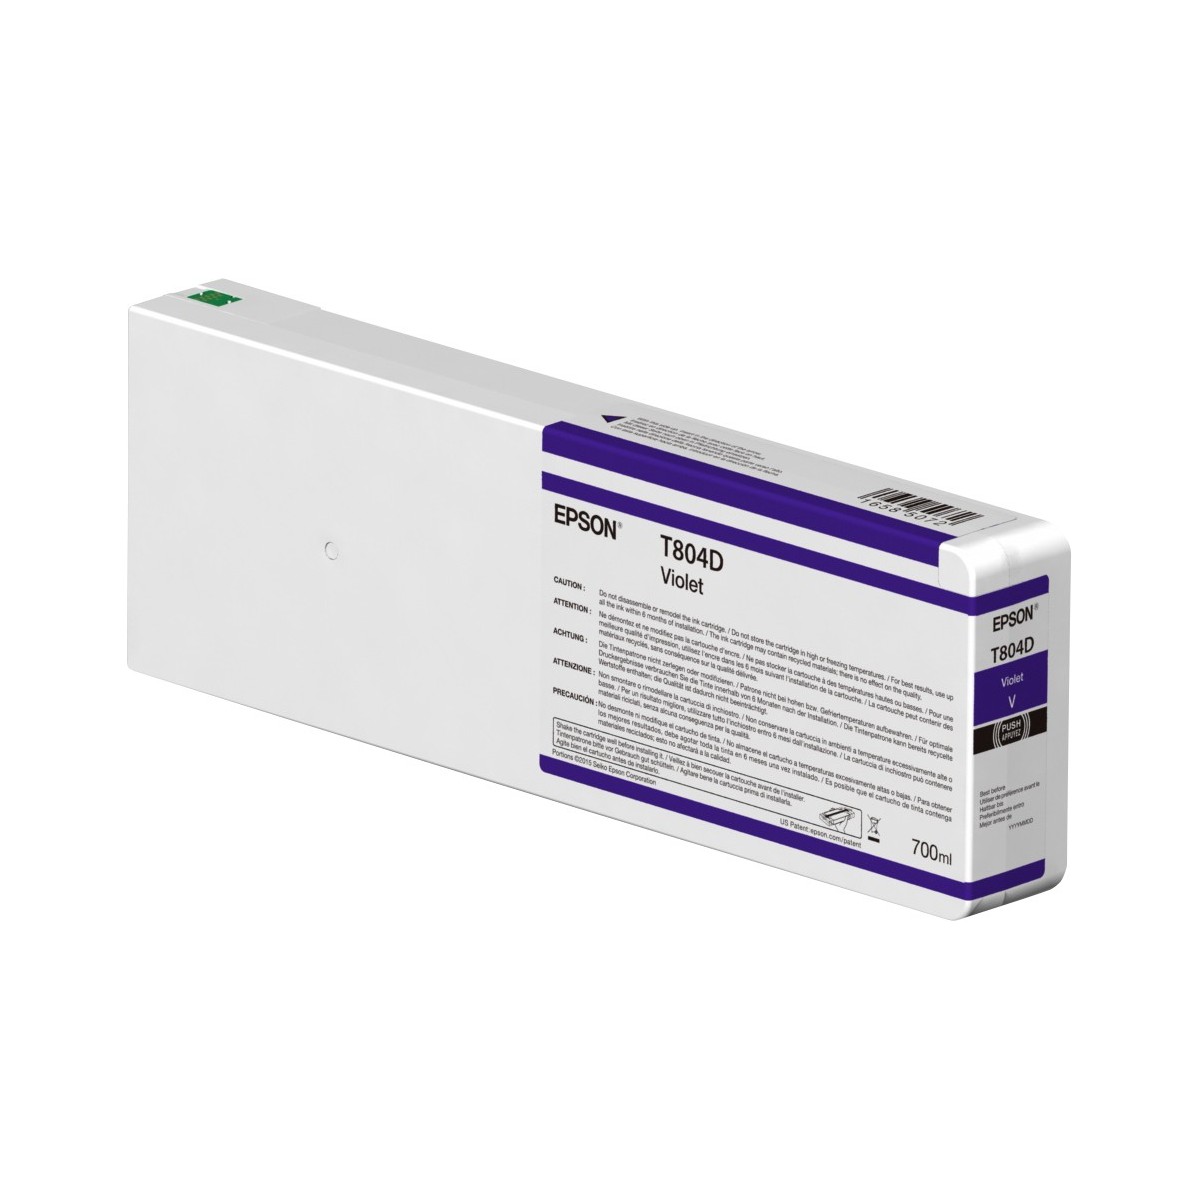 Epson Singlepack Violet T804D00 UltraChrome HDX 700ml - Original - Pigment-based ink - Violet - Epson - SC-P9000V SC-P7000 SC-P7